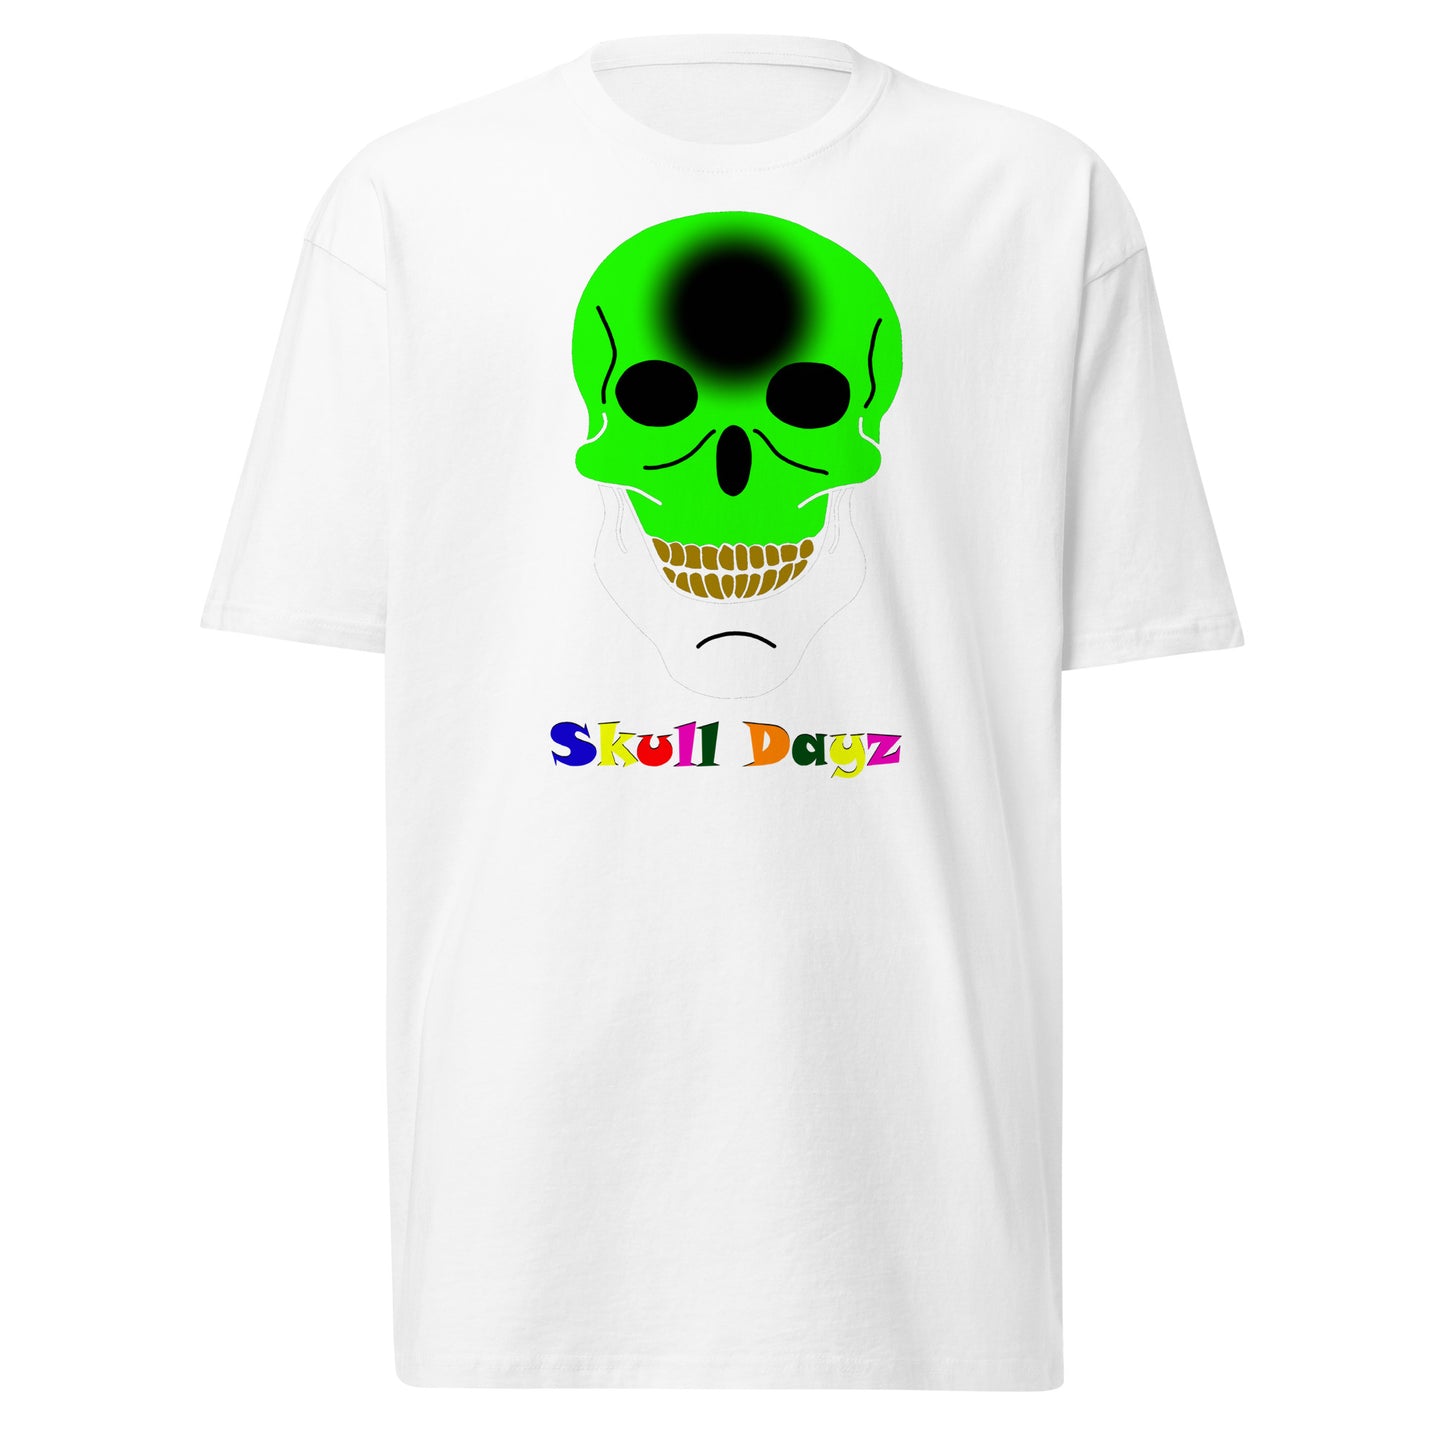 Skull Dayz tee - Skull Dayz